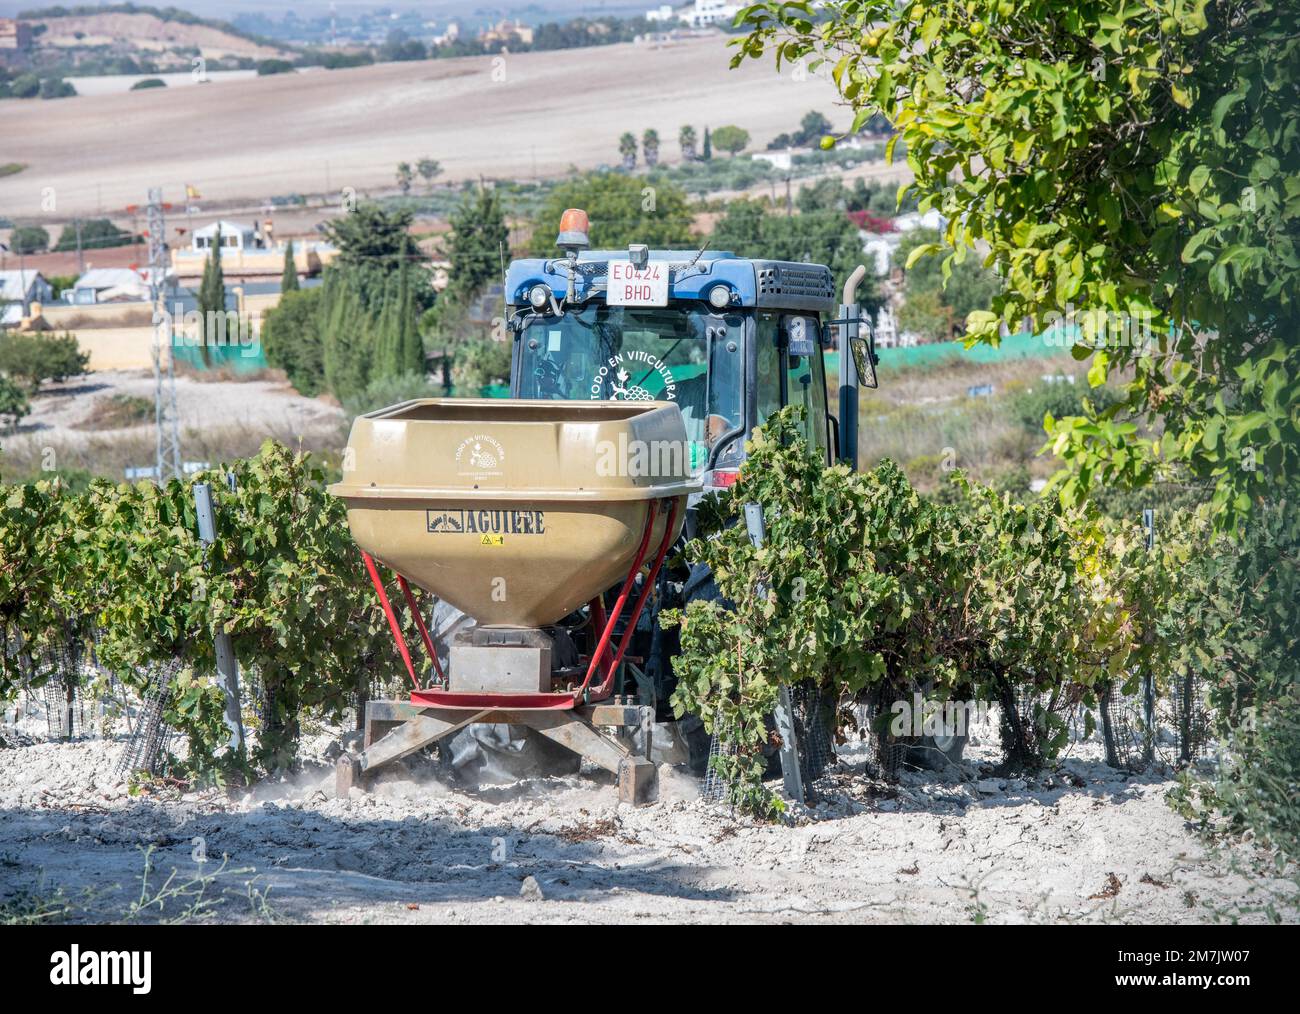 Tracteur tirant des équipements de labour entre les rangées de vignes du vignoble pour le sherry, Jerez de la Frontera, Espagne Banque D'Images